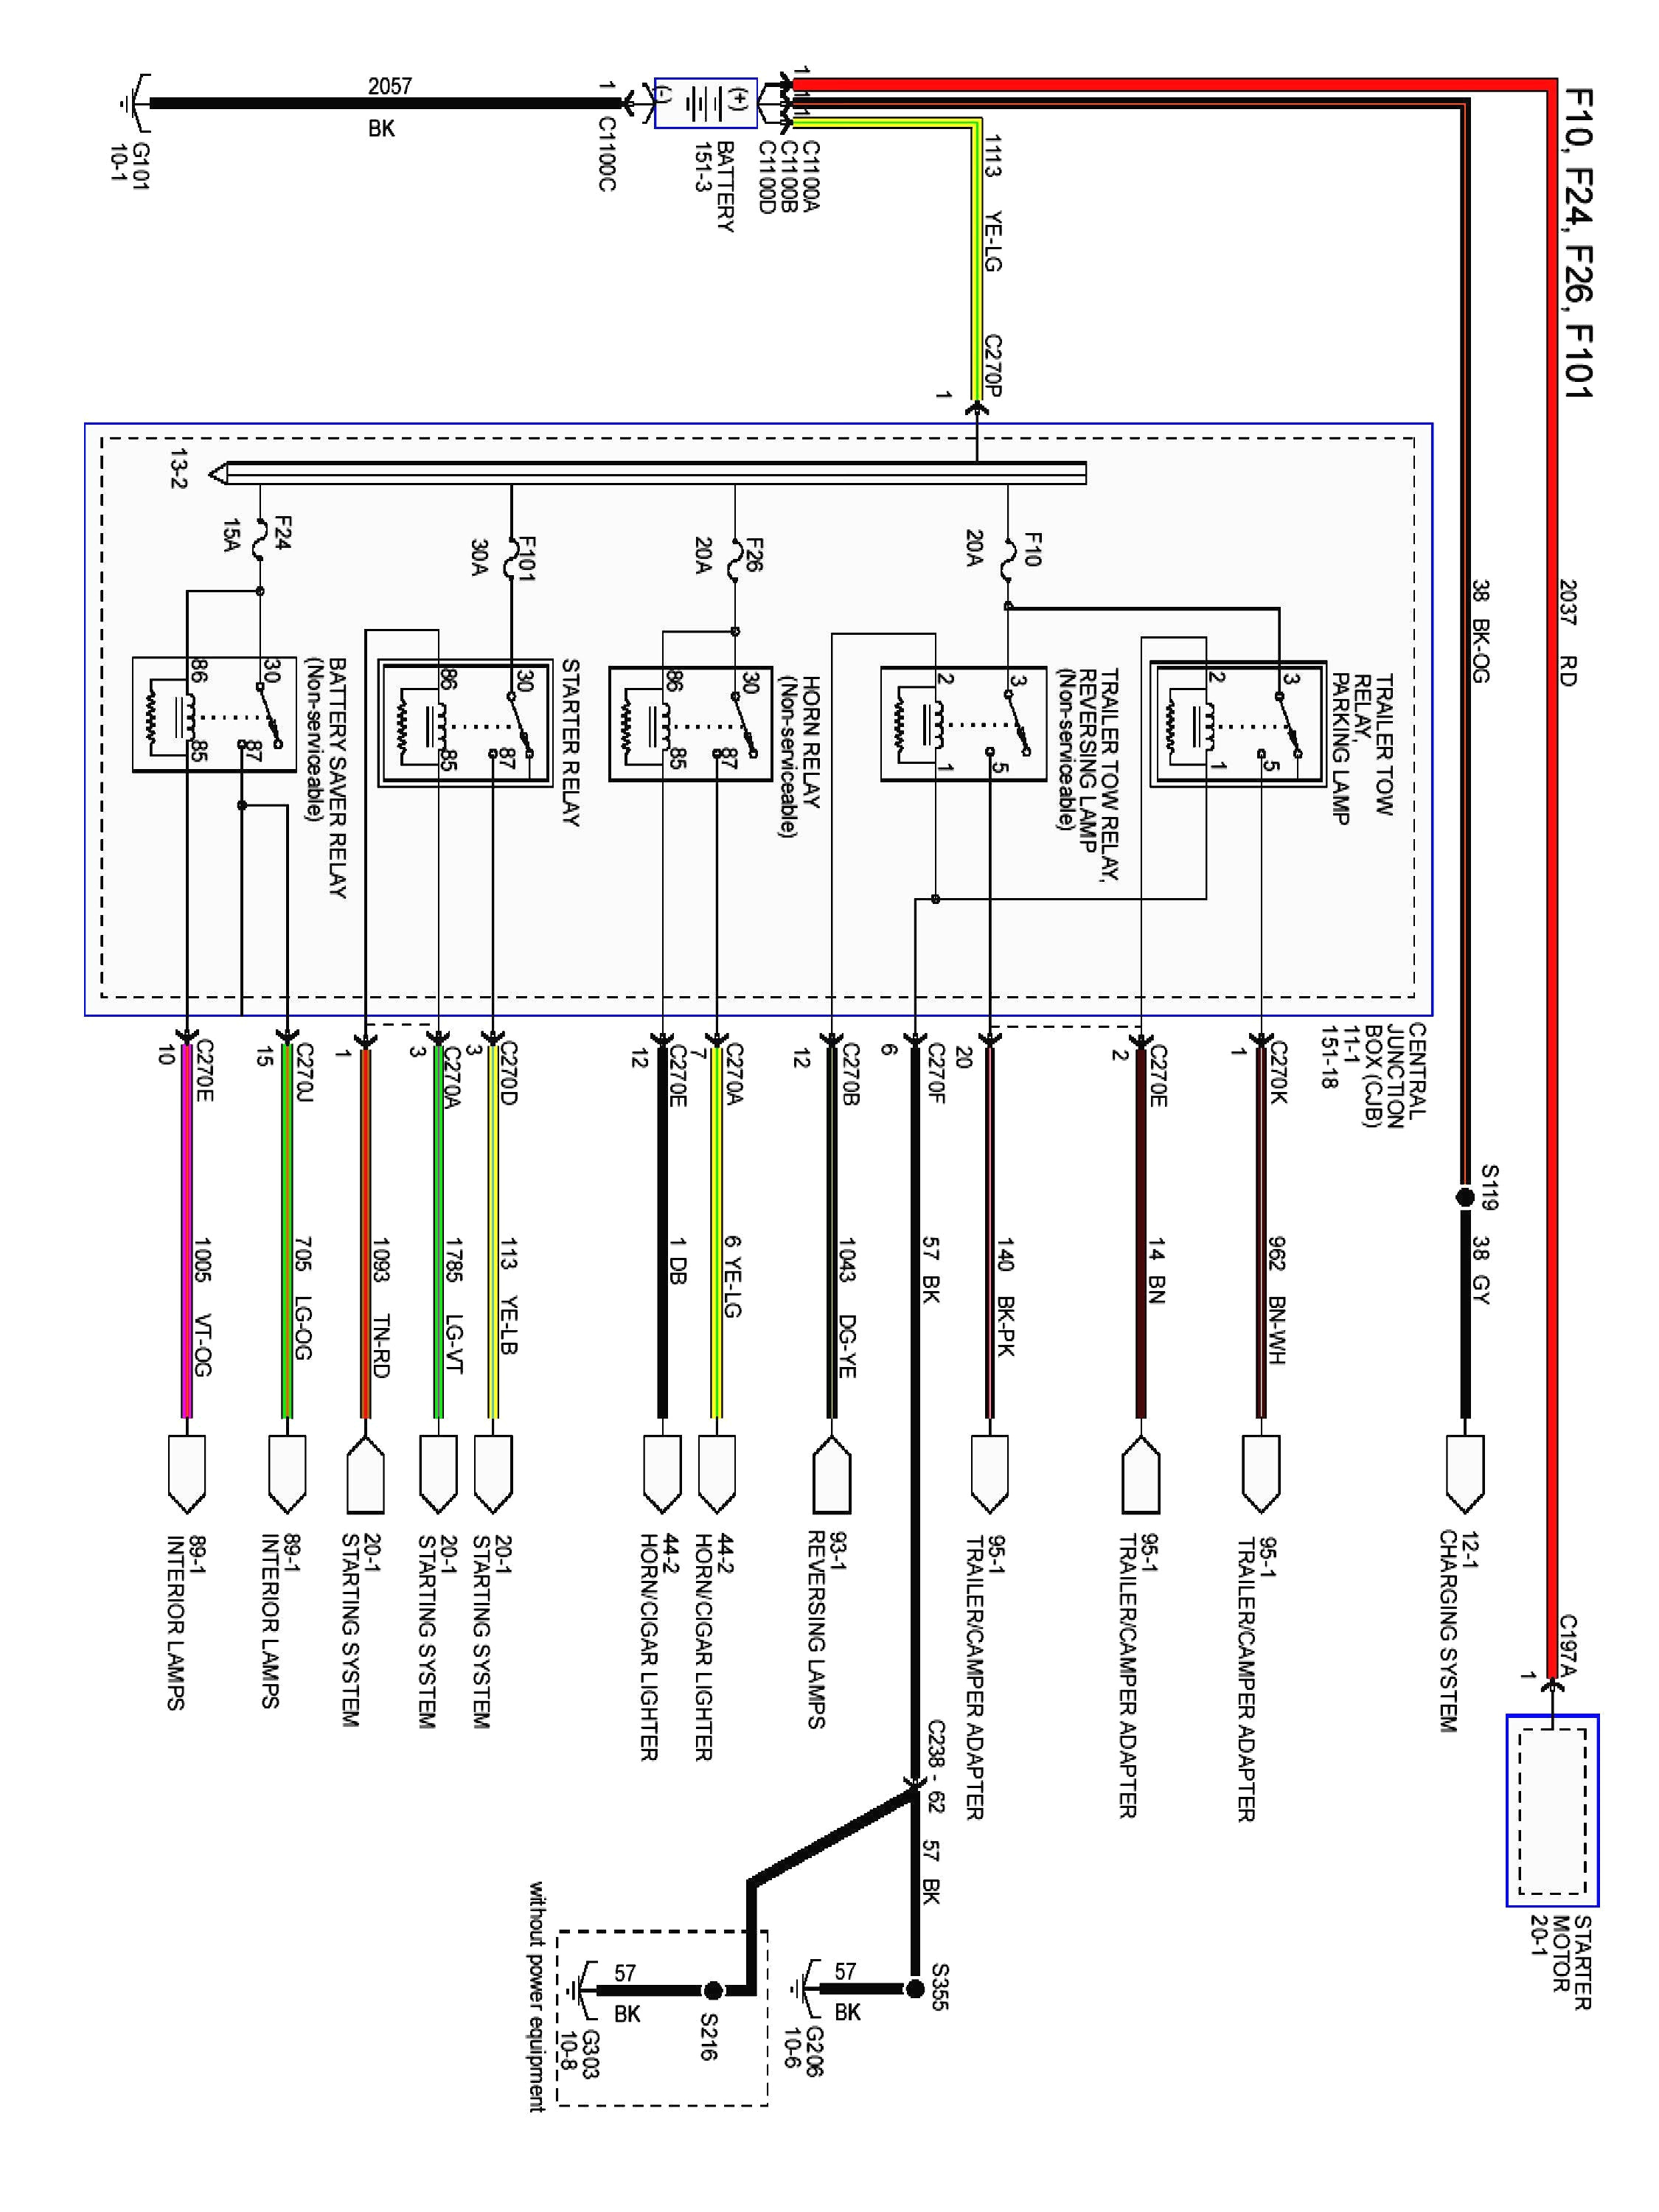 ford wiring diagram pdf wiring diagram blog 2001 f150 wiring diagram pdf 2001 f150 wiring diagram pdf